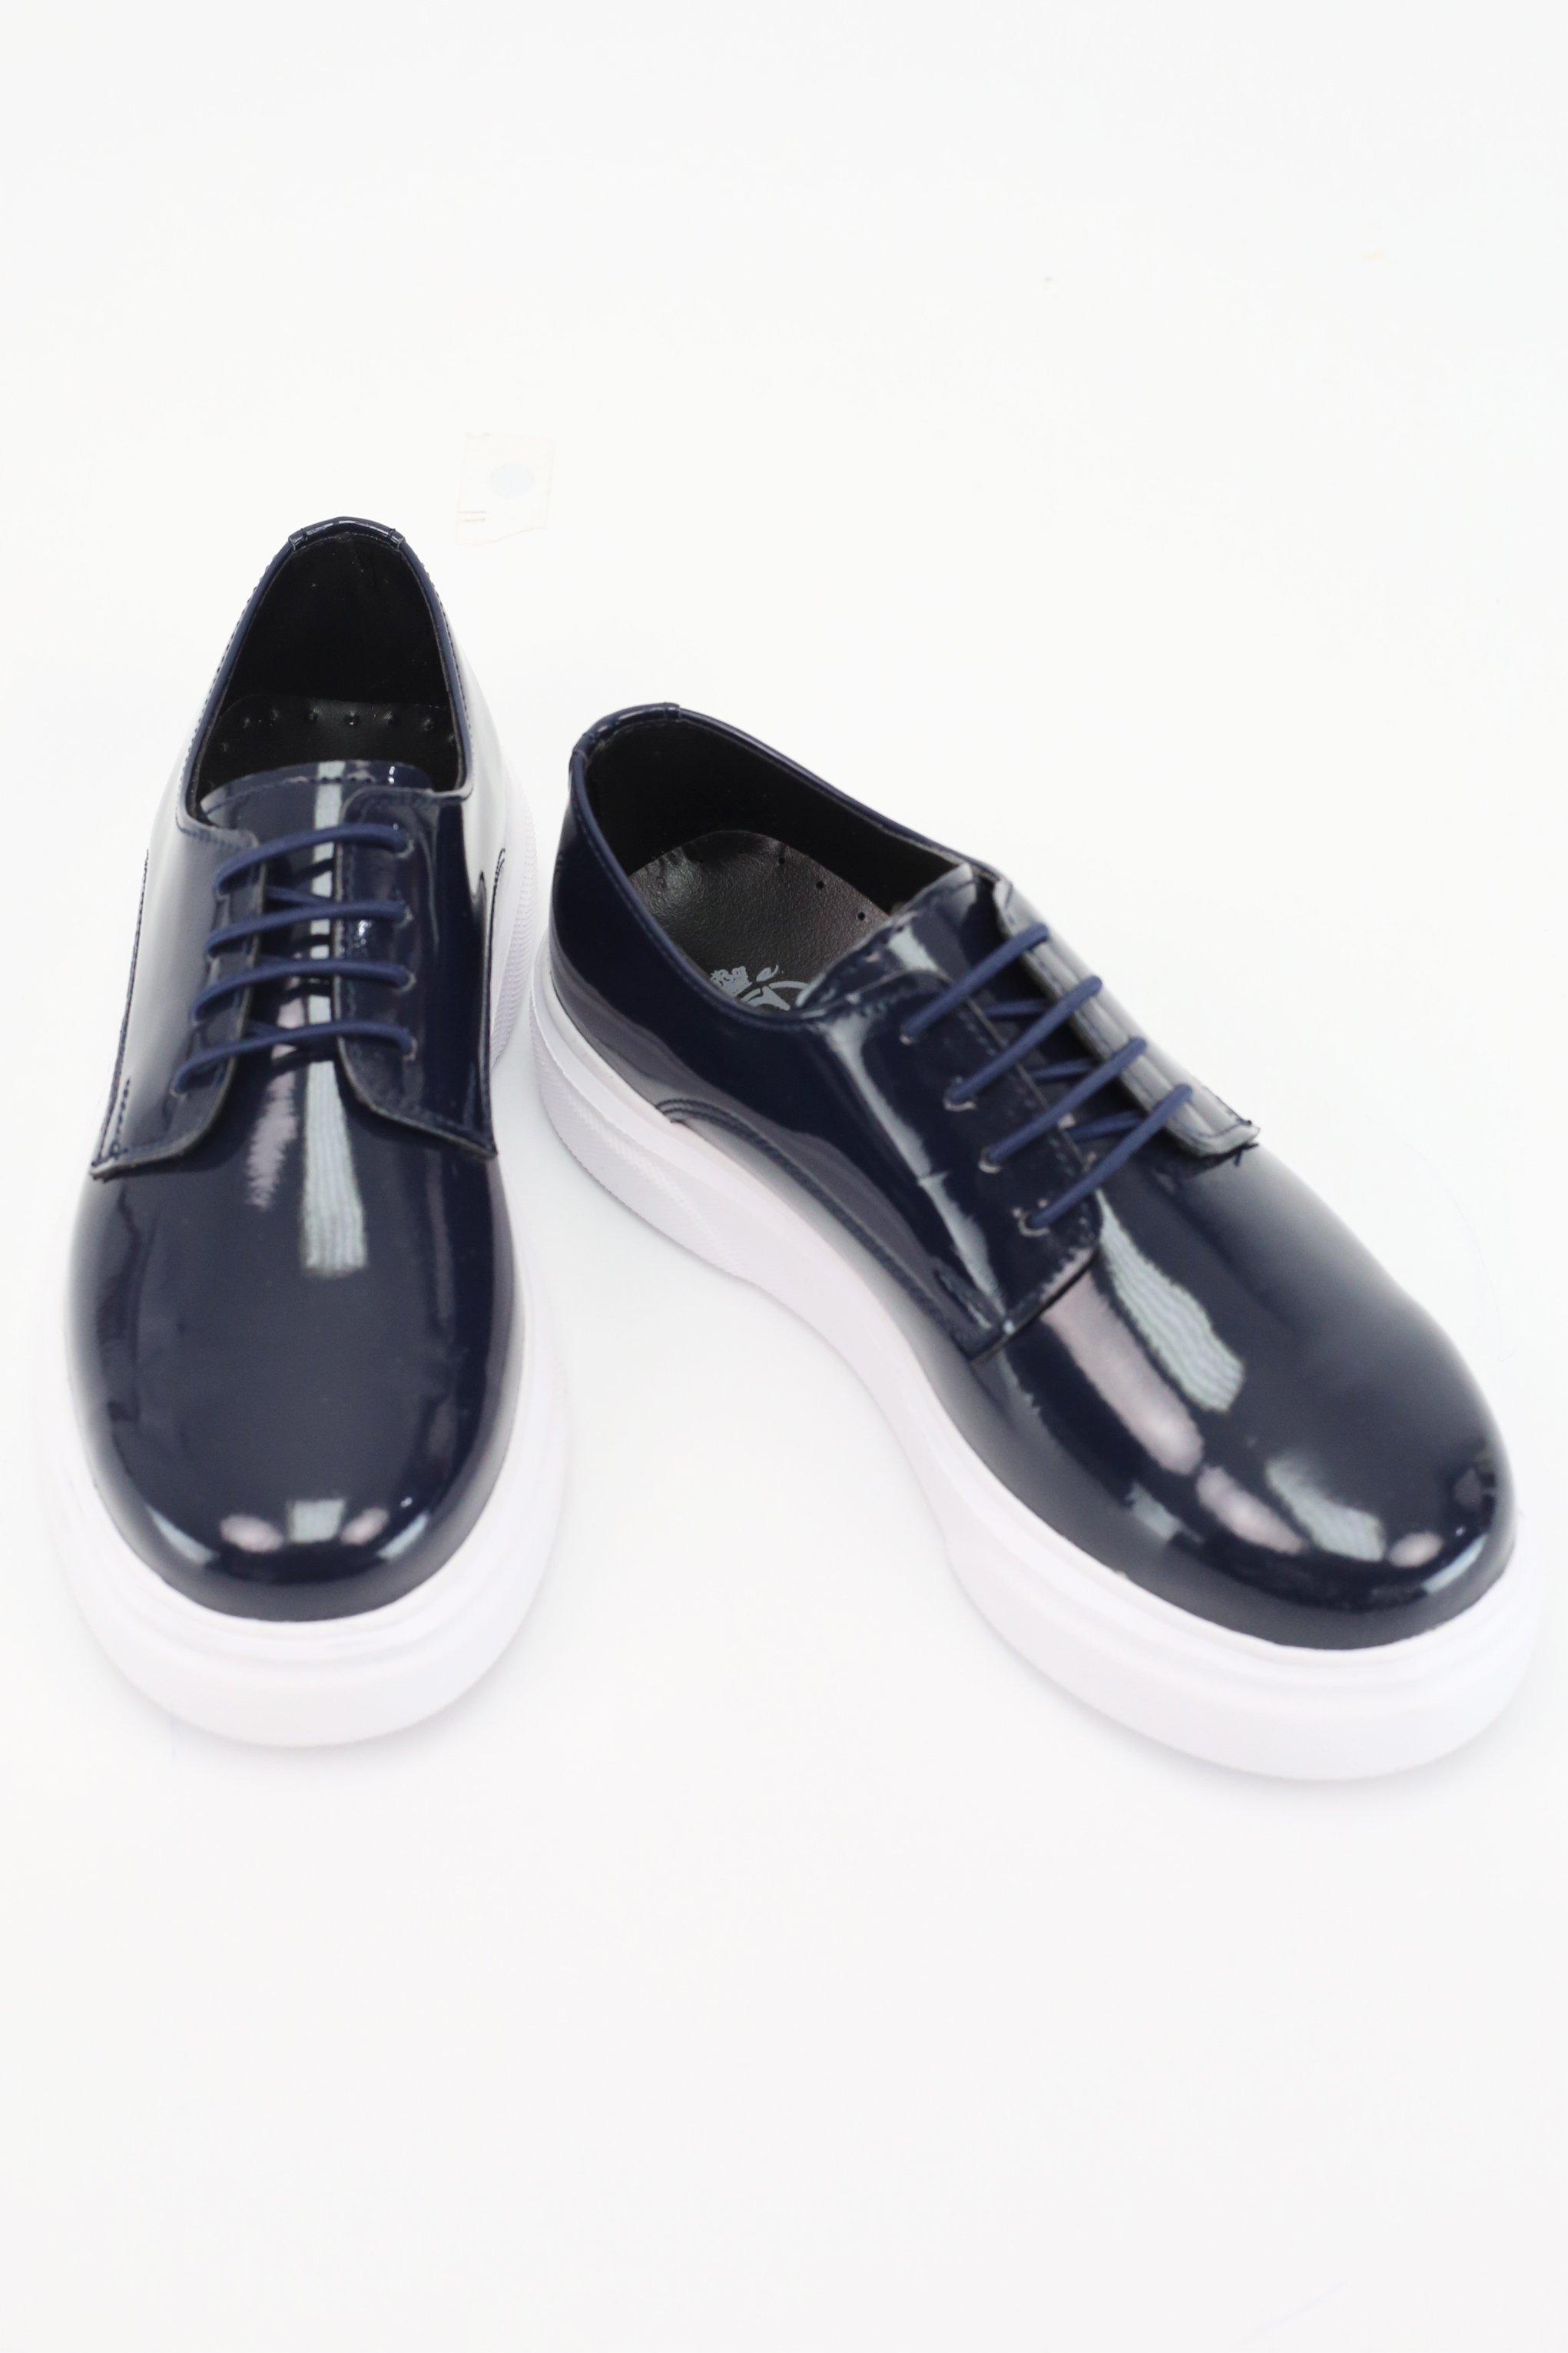 SIRRI Schwarze Slip-On Lackschuhe für Jungen, Sneaker im Gibson-Design für formelle und Freizeitkleidung - Navy blau